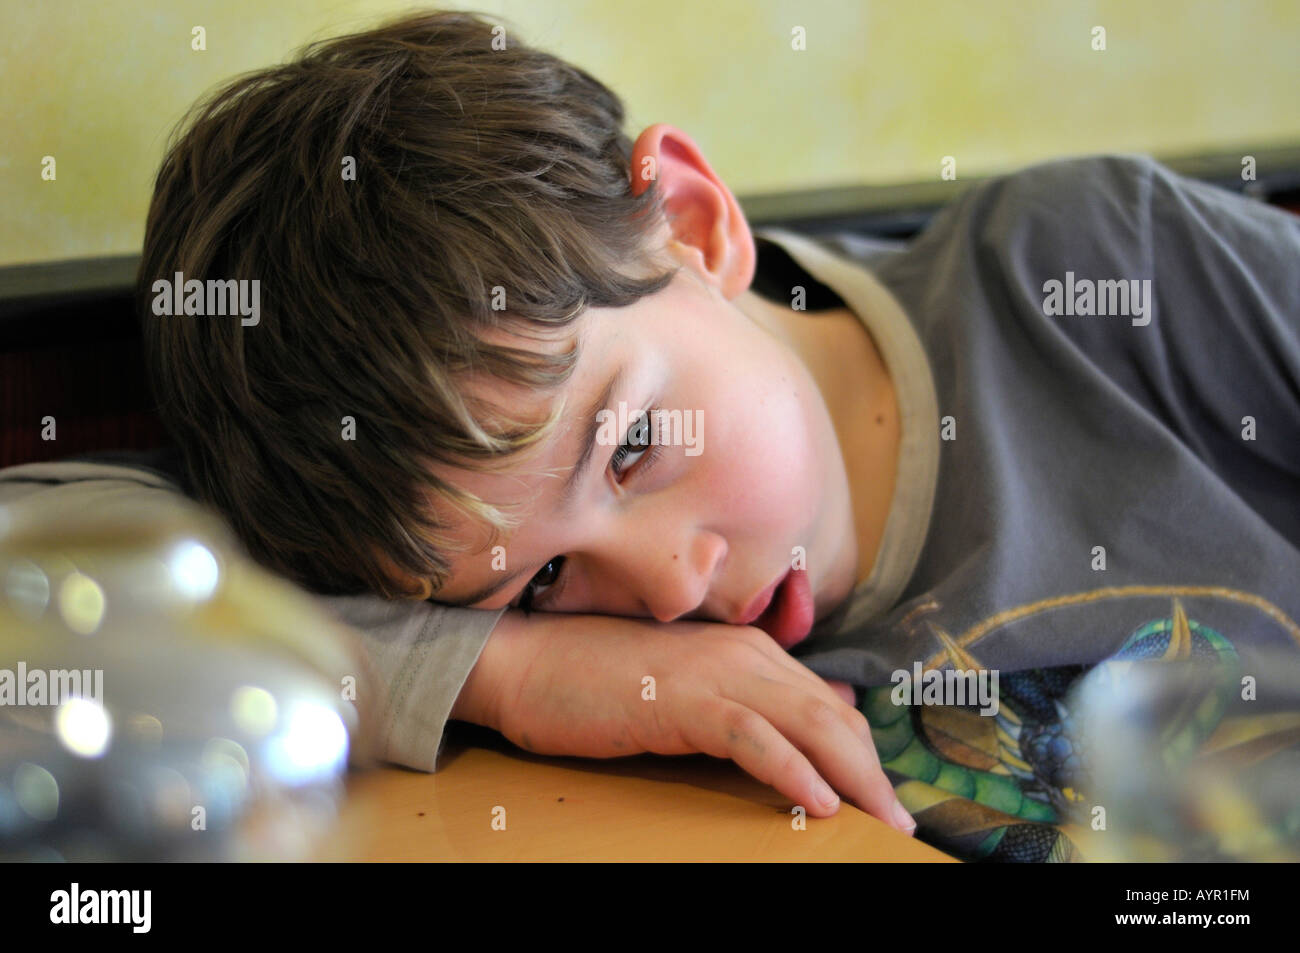 Junge, müde 9 Jahre alt, gelangweilt, nachdenklich Stockfoto